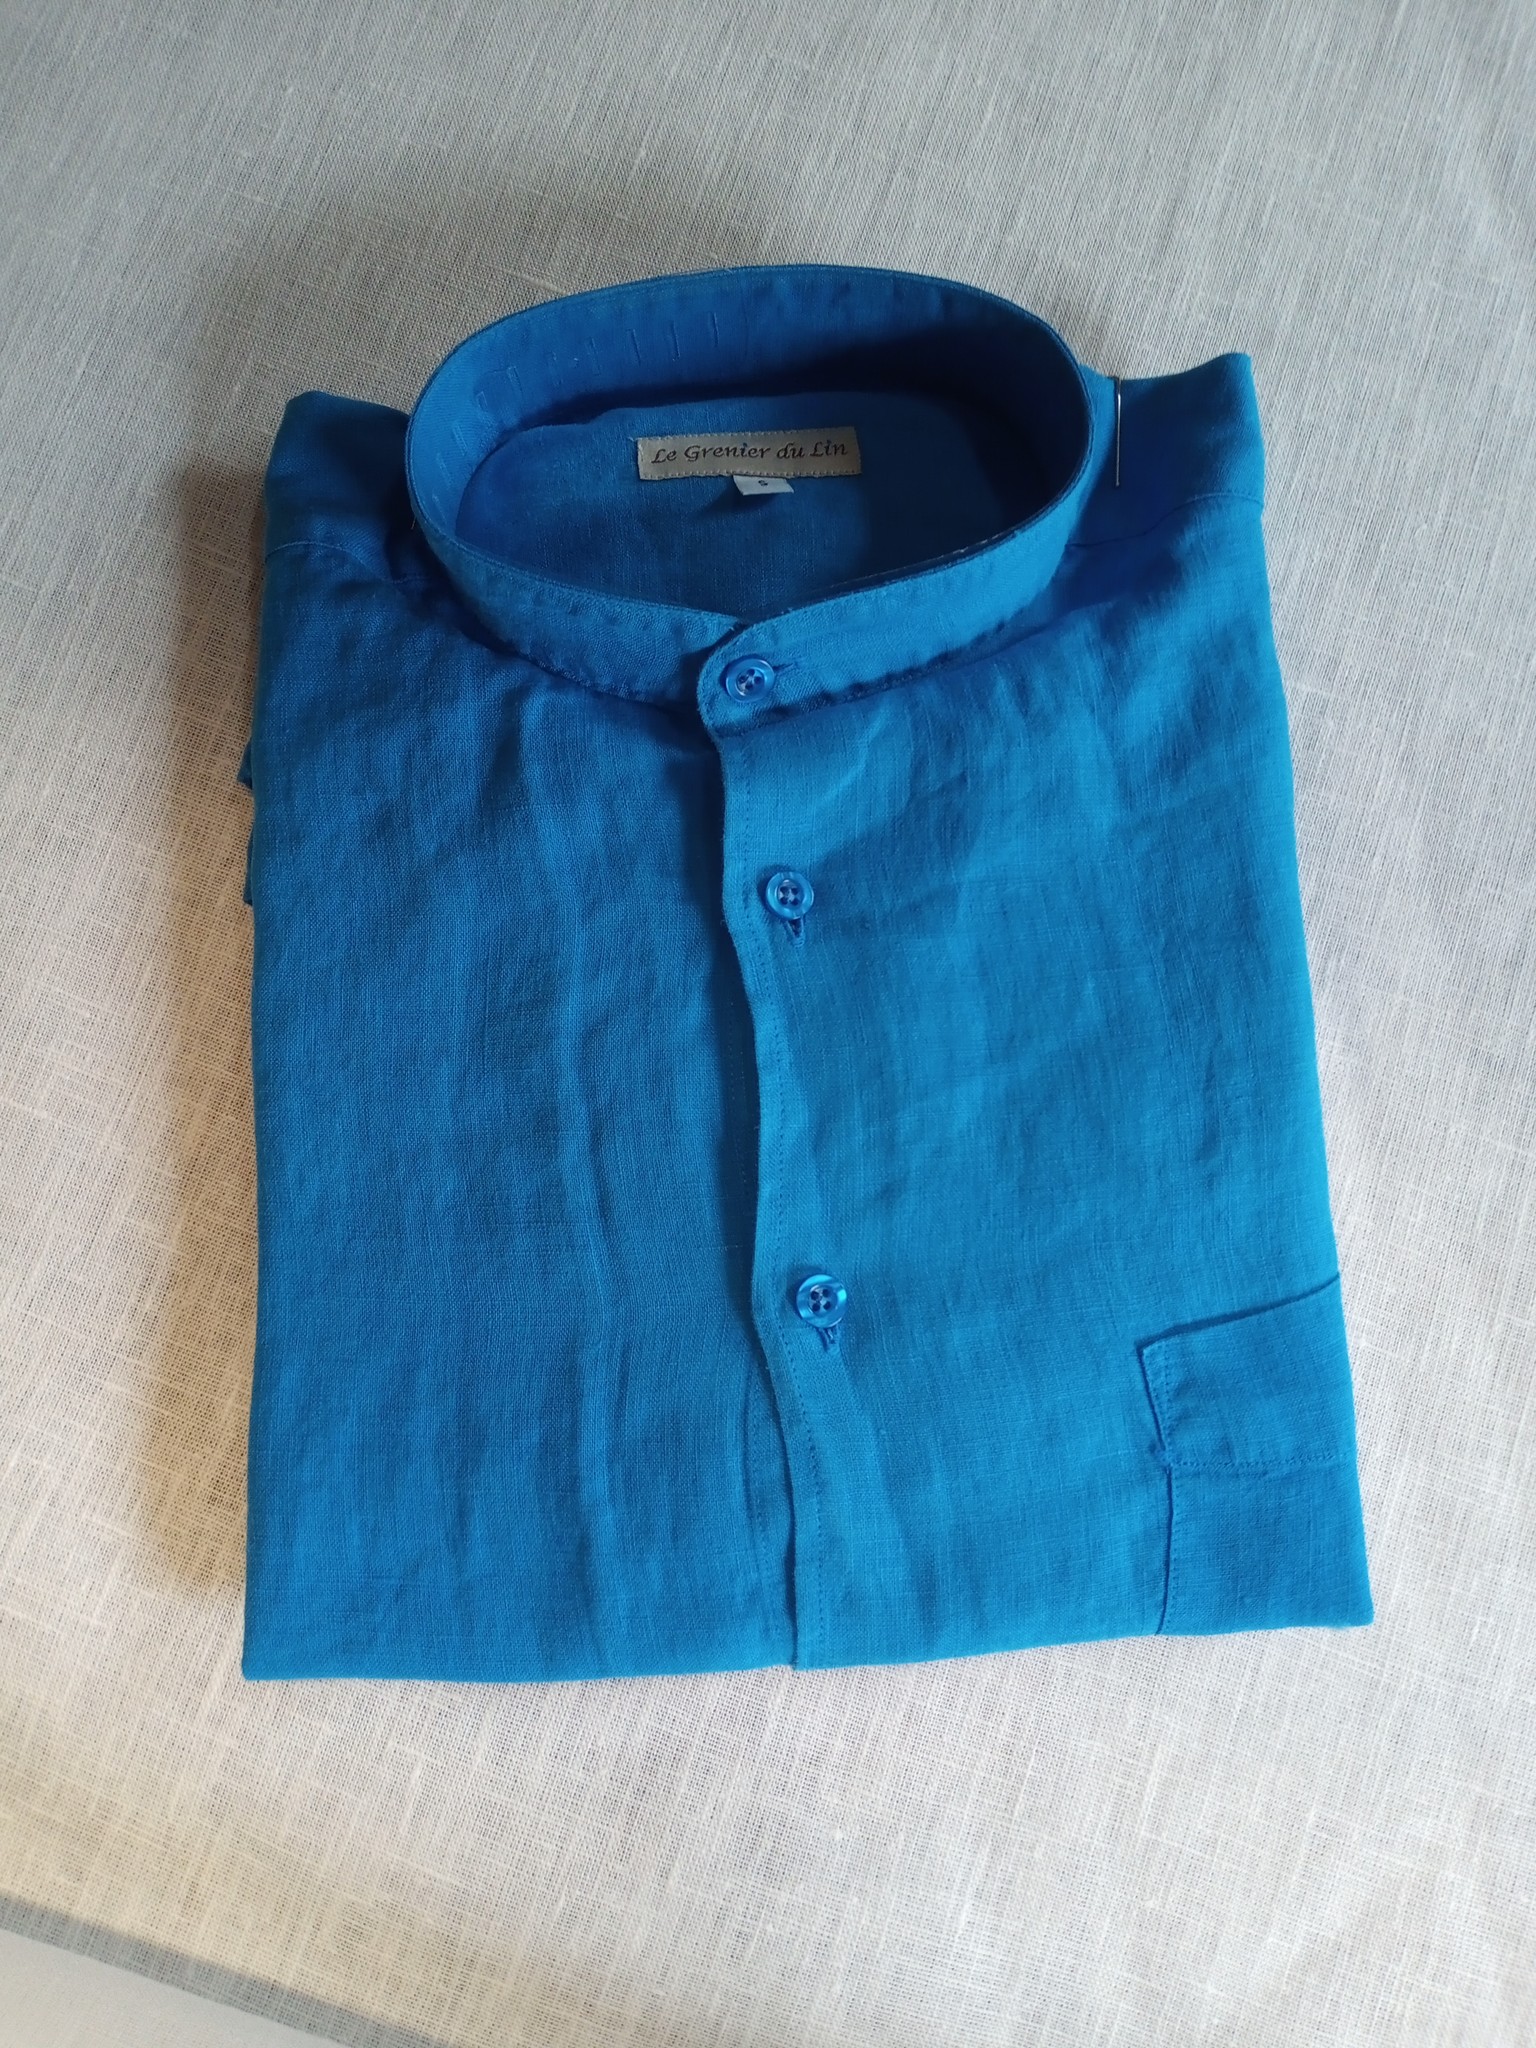 Le grenier du lin Linnen overhemd, lange mouwen, officierskraag, blauw